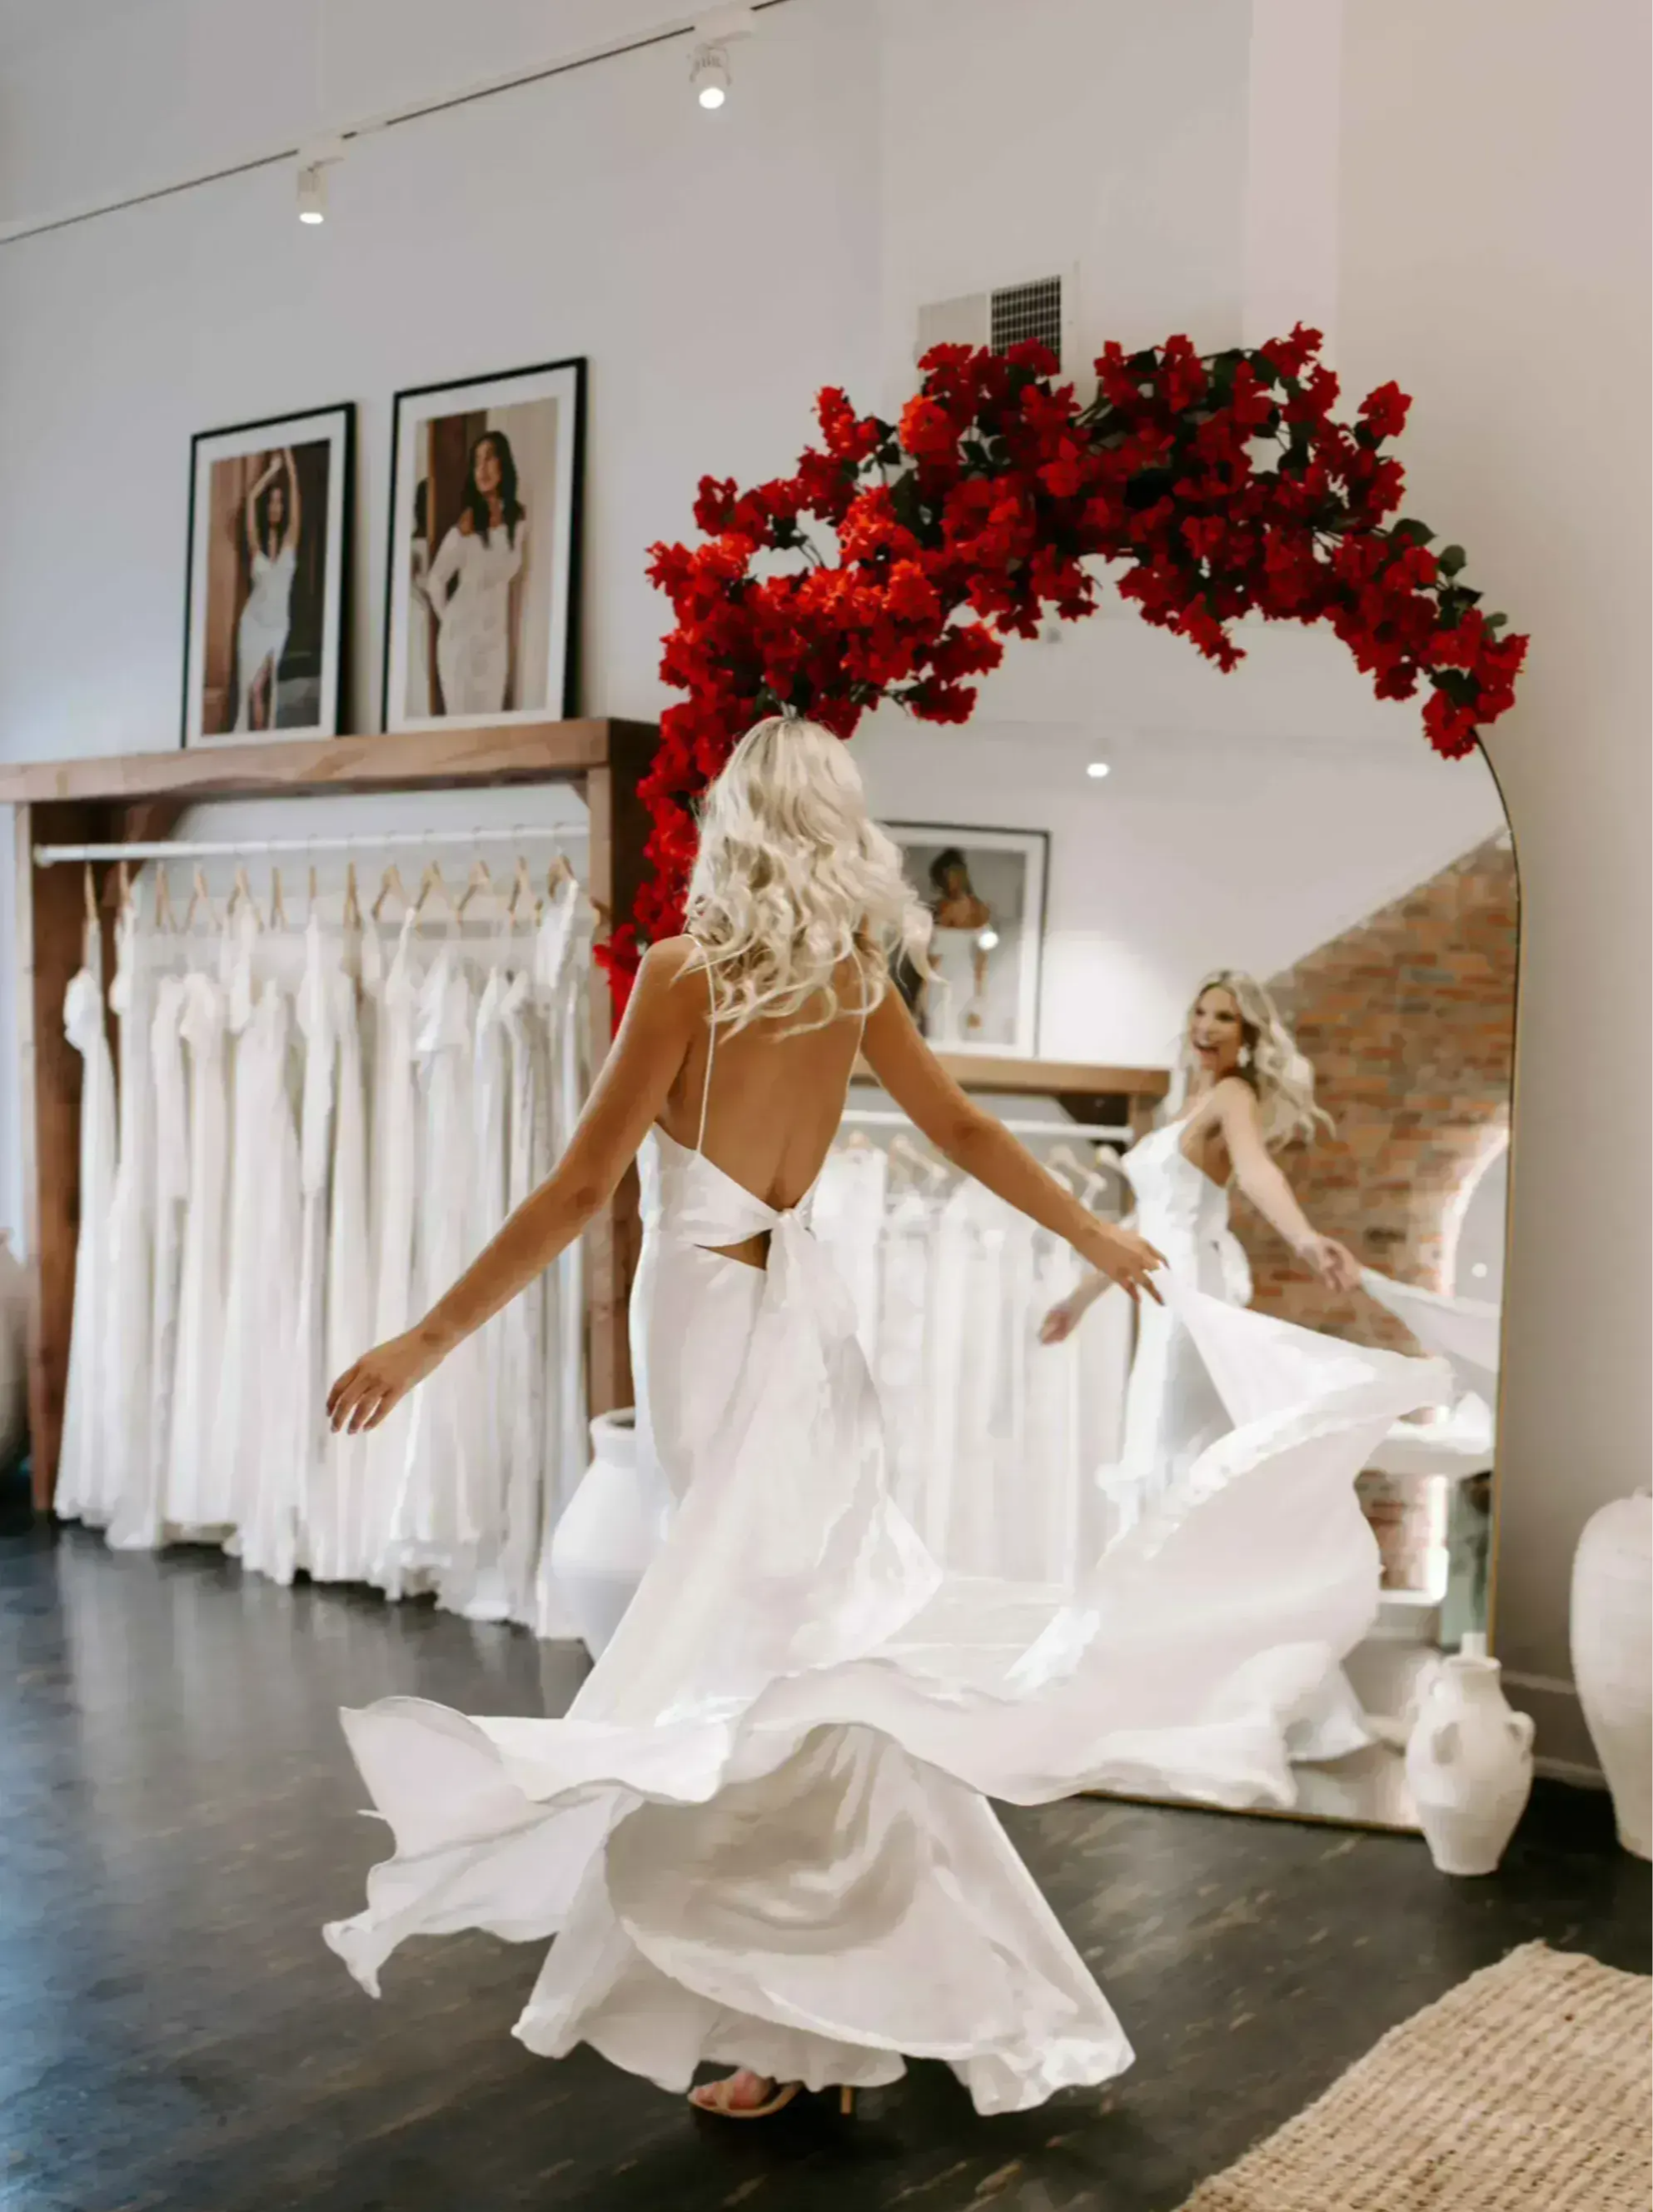 Die Braut wirbelt vor einem Spiegel mit einem roten Blumenarrangement